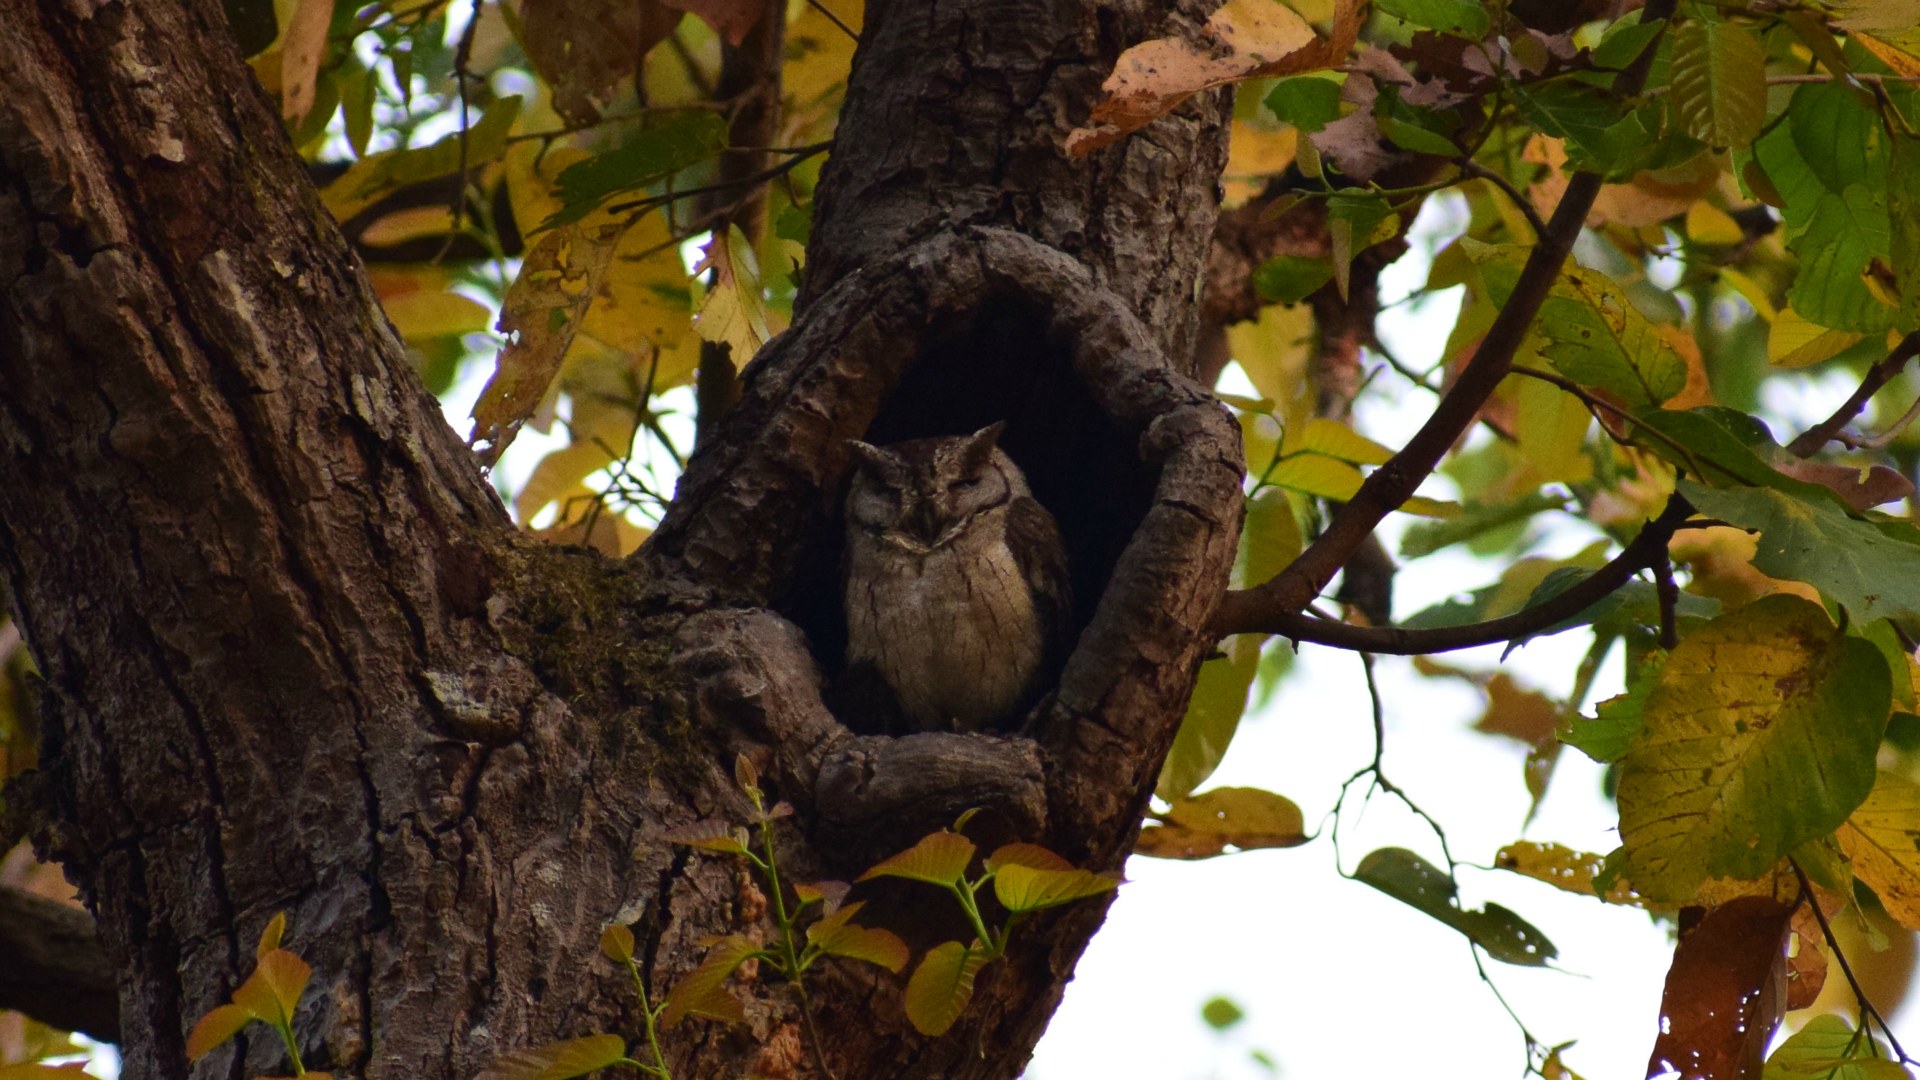 Indian Scops Owl, Kanha National Park